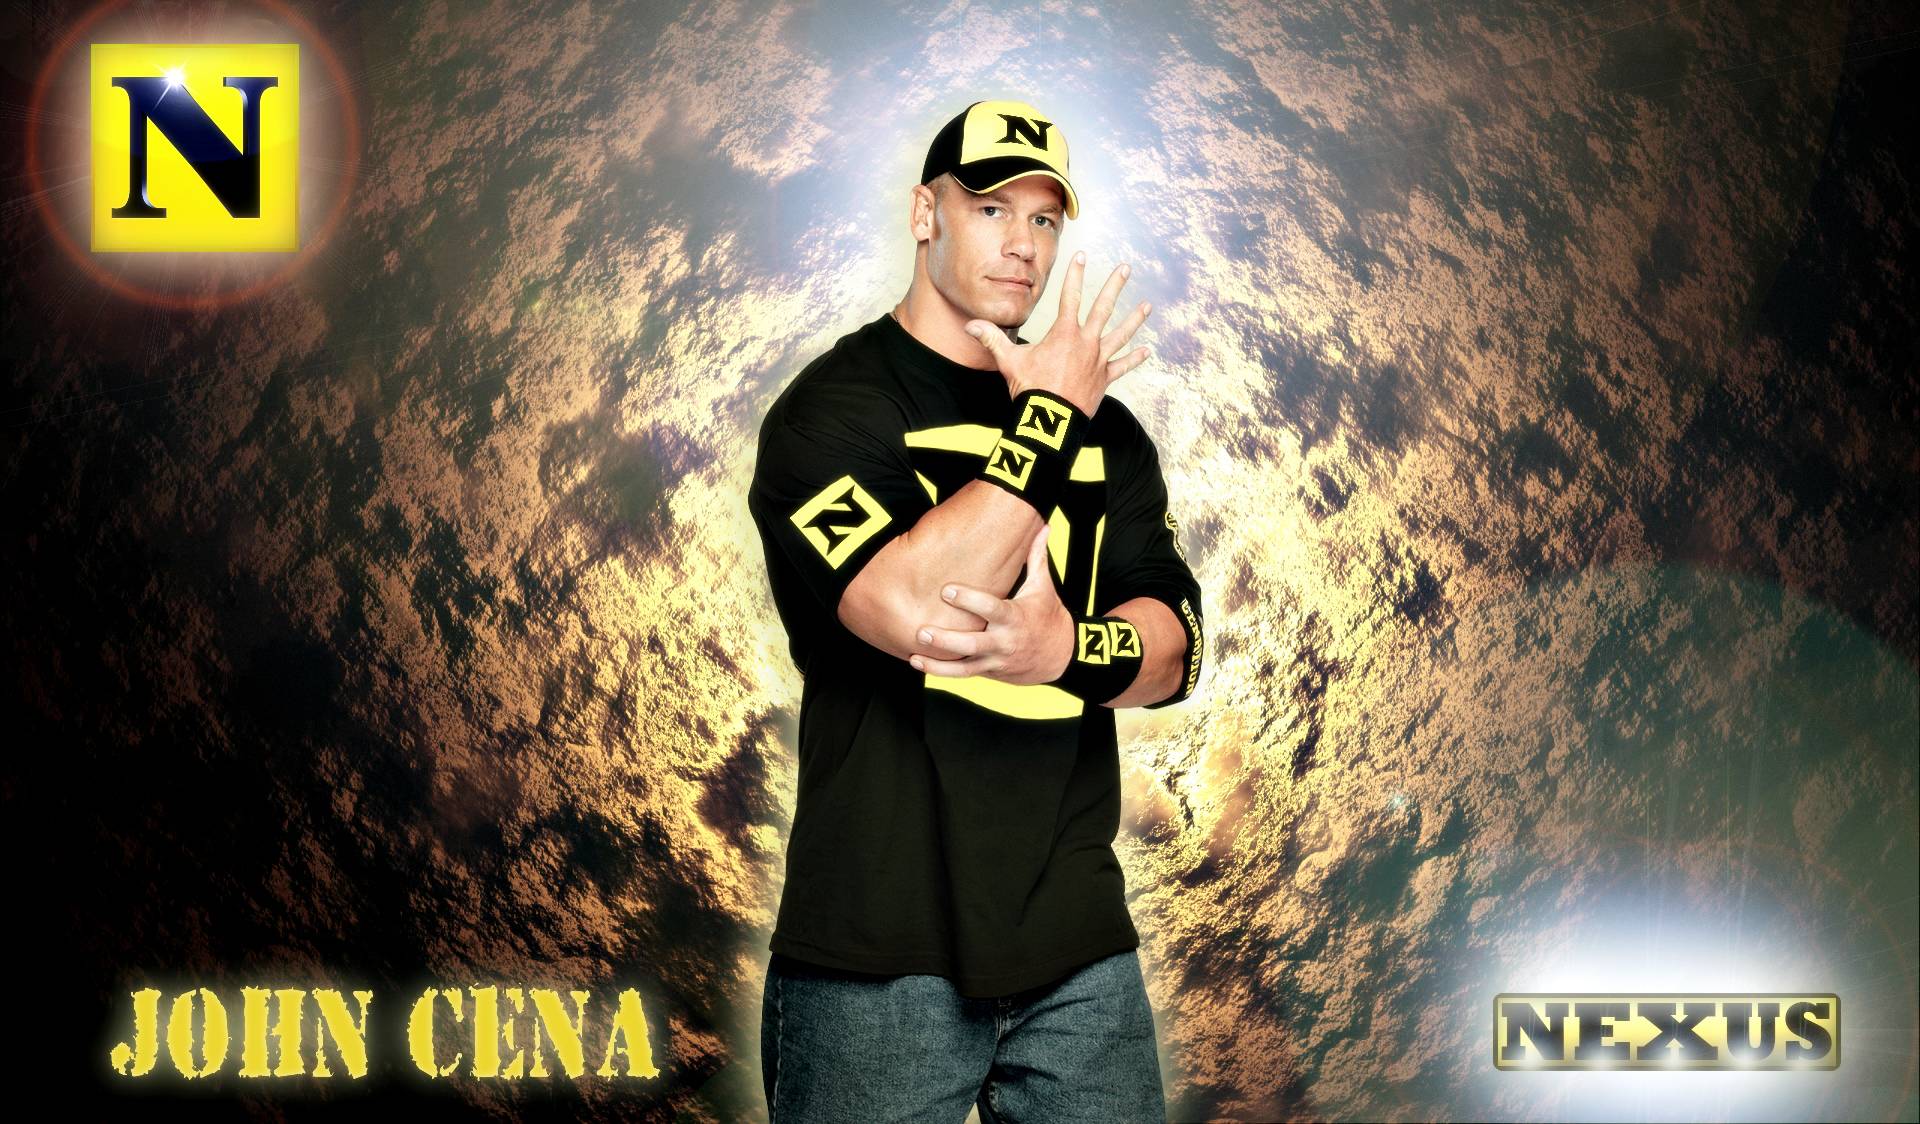 John Cena Widescreen Image 06